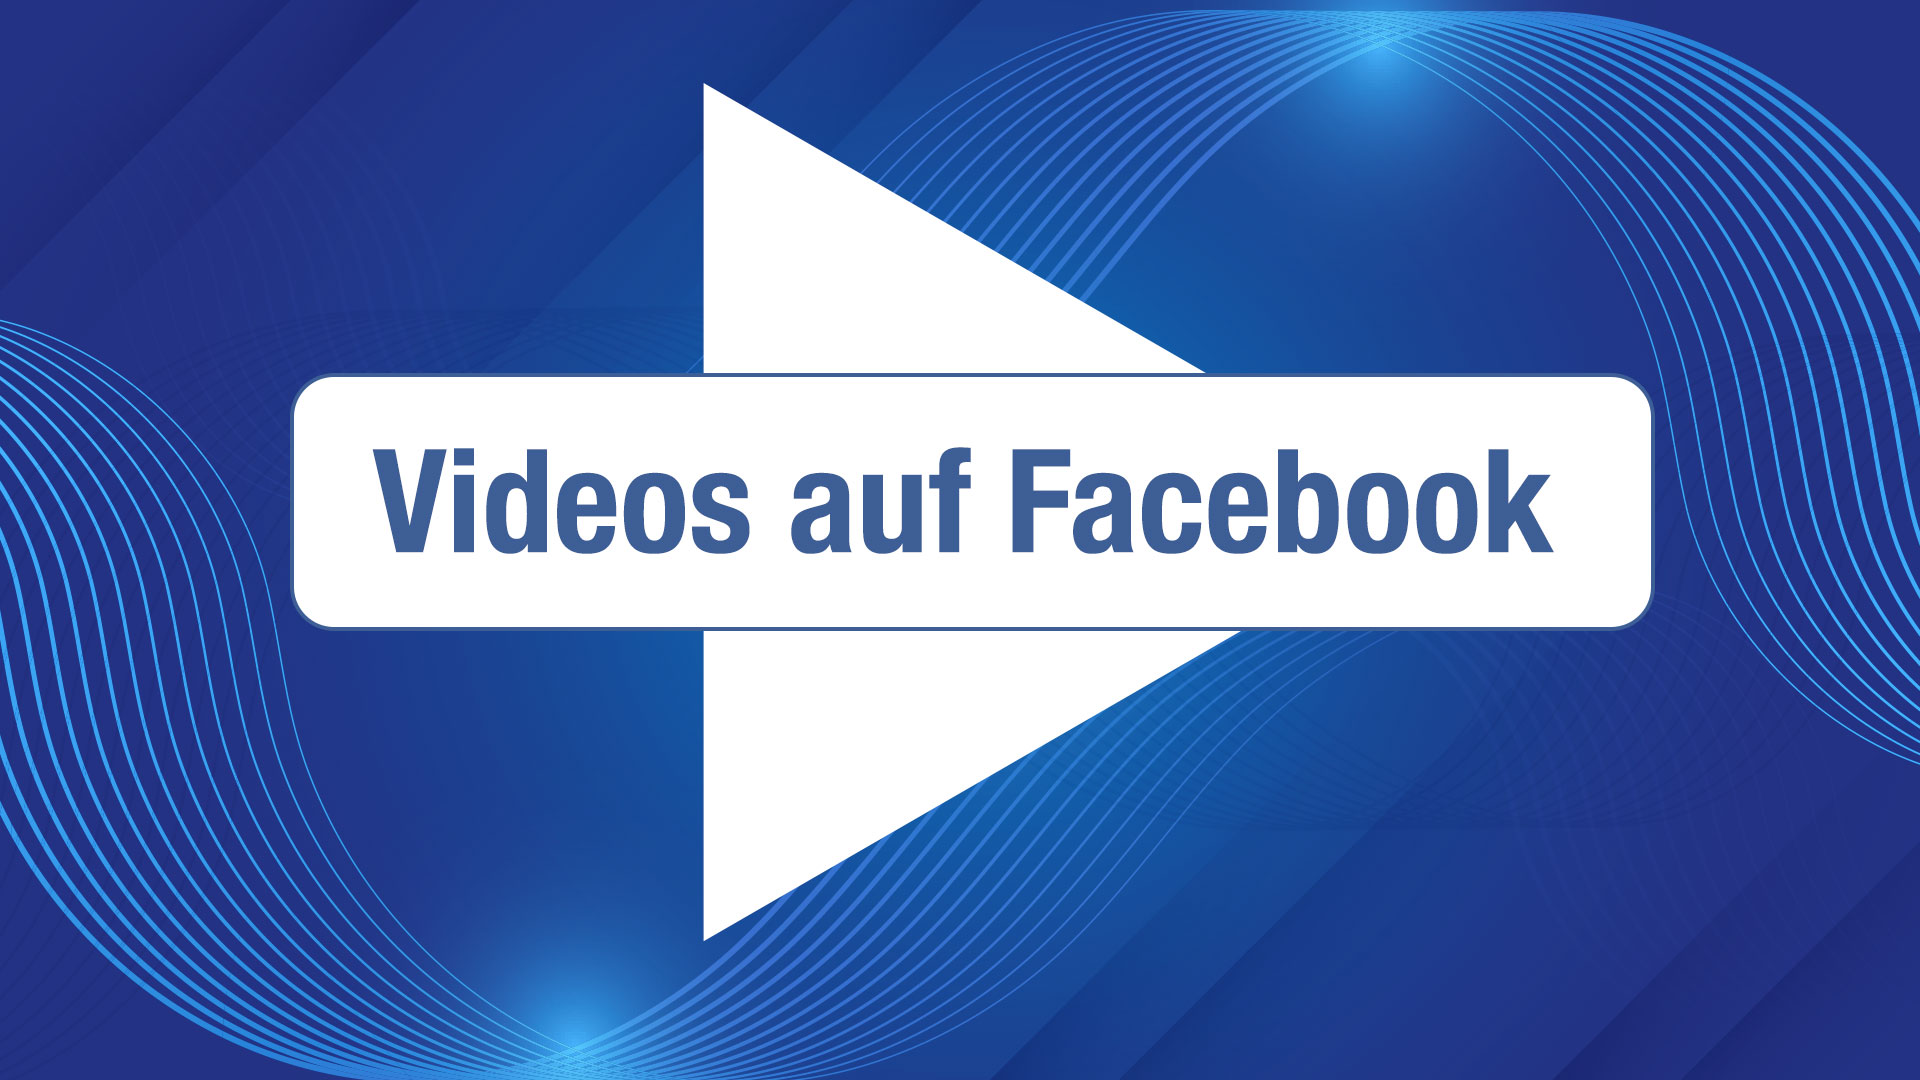 Videos auf Facebook richtig einsetzen – so geht's!